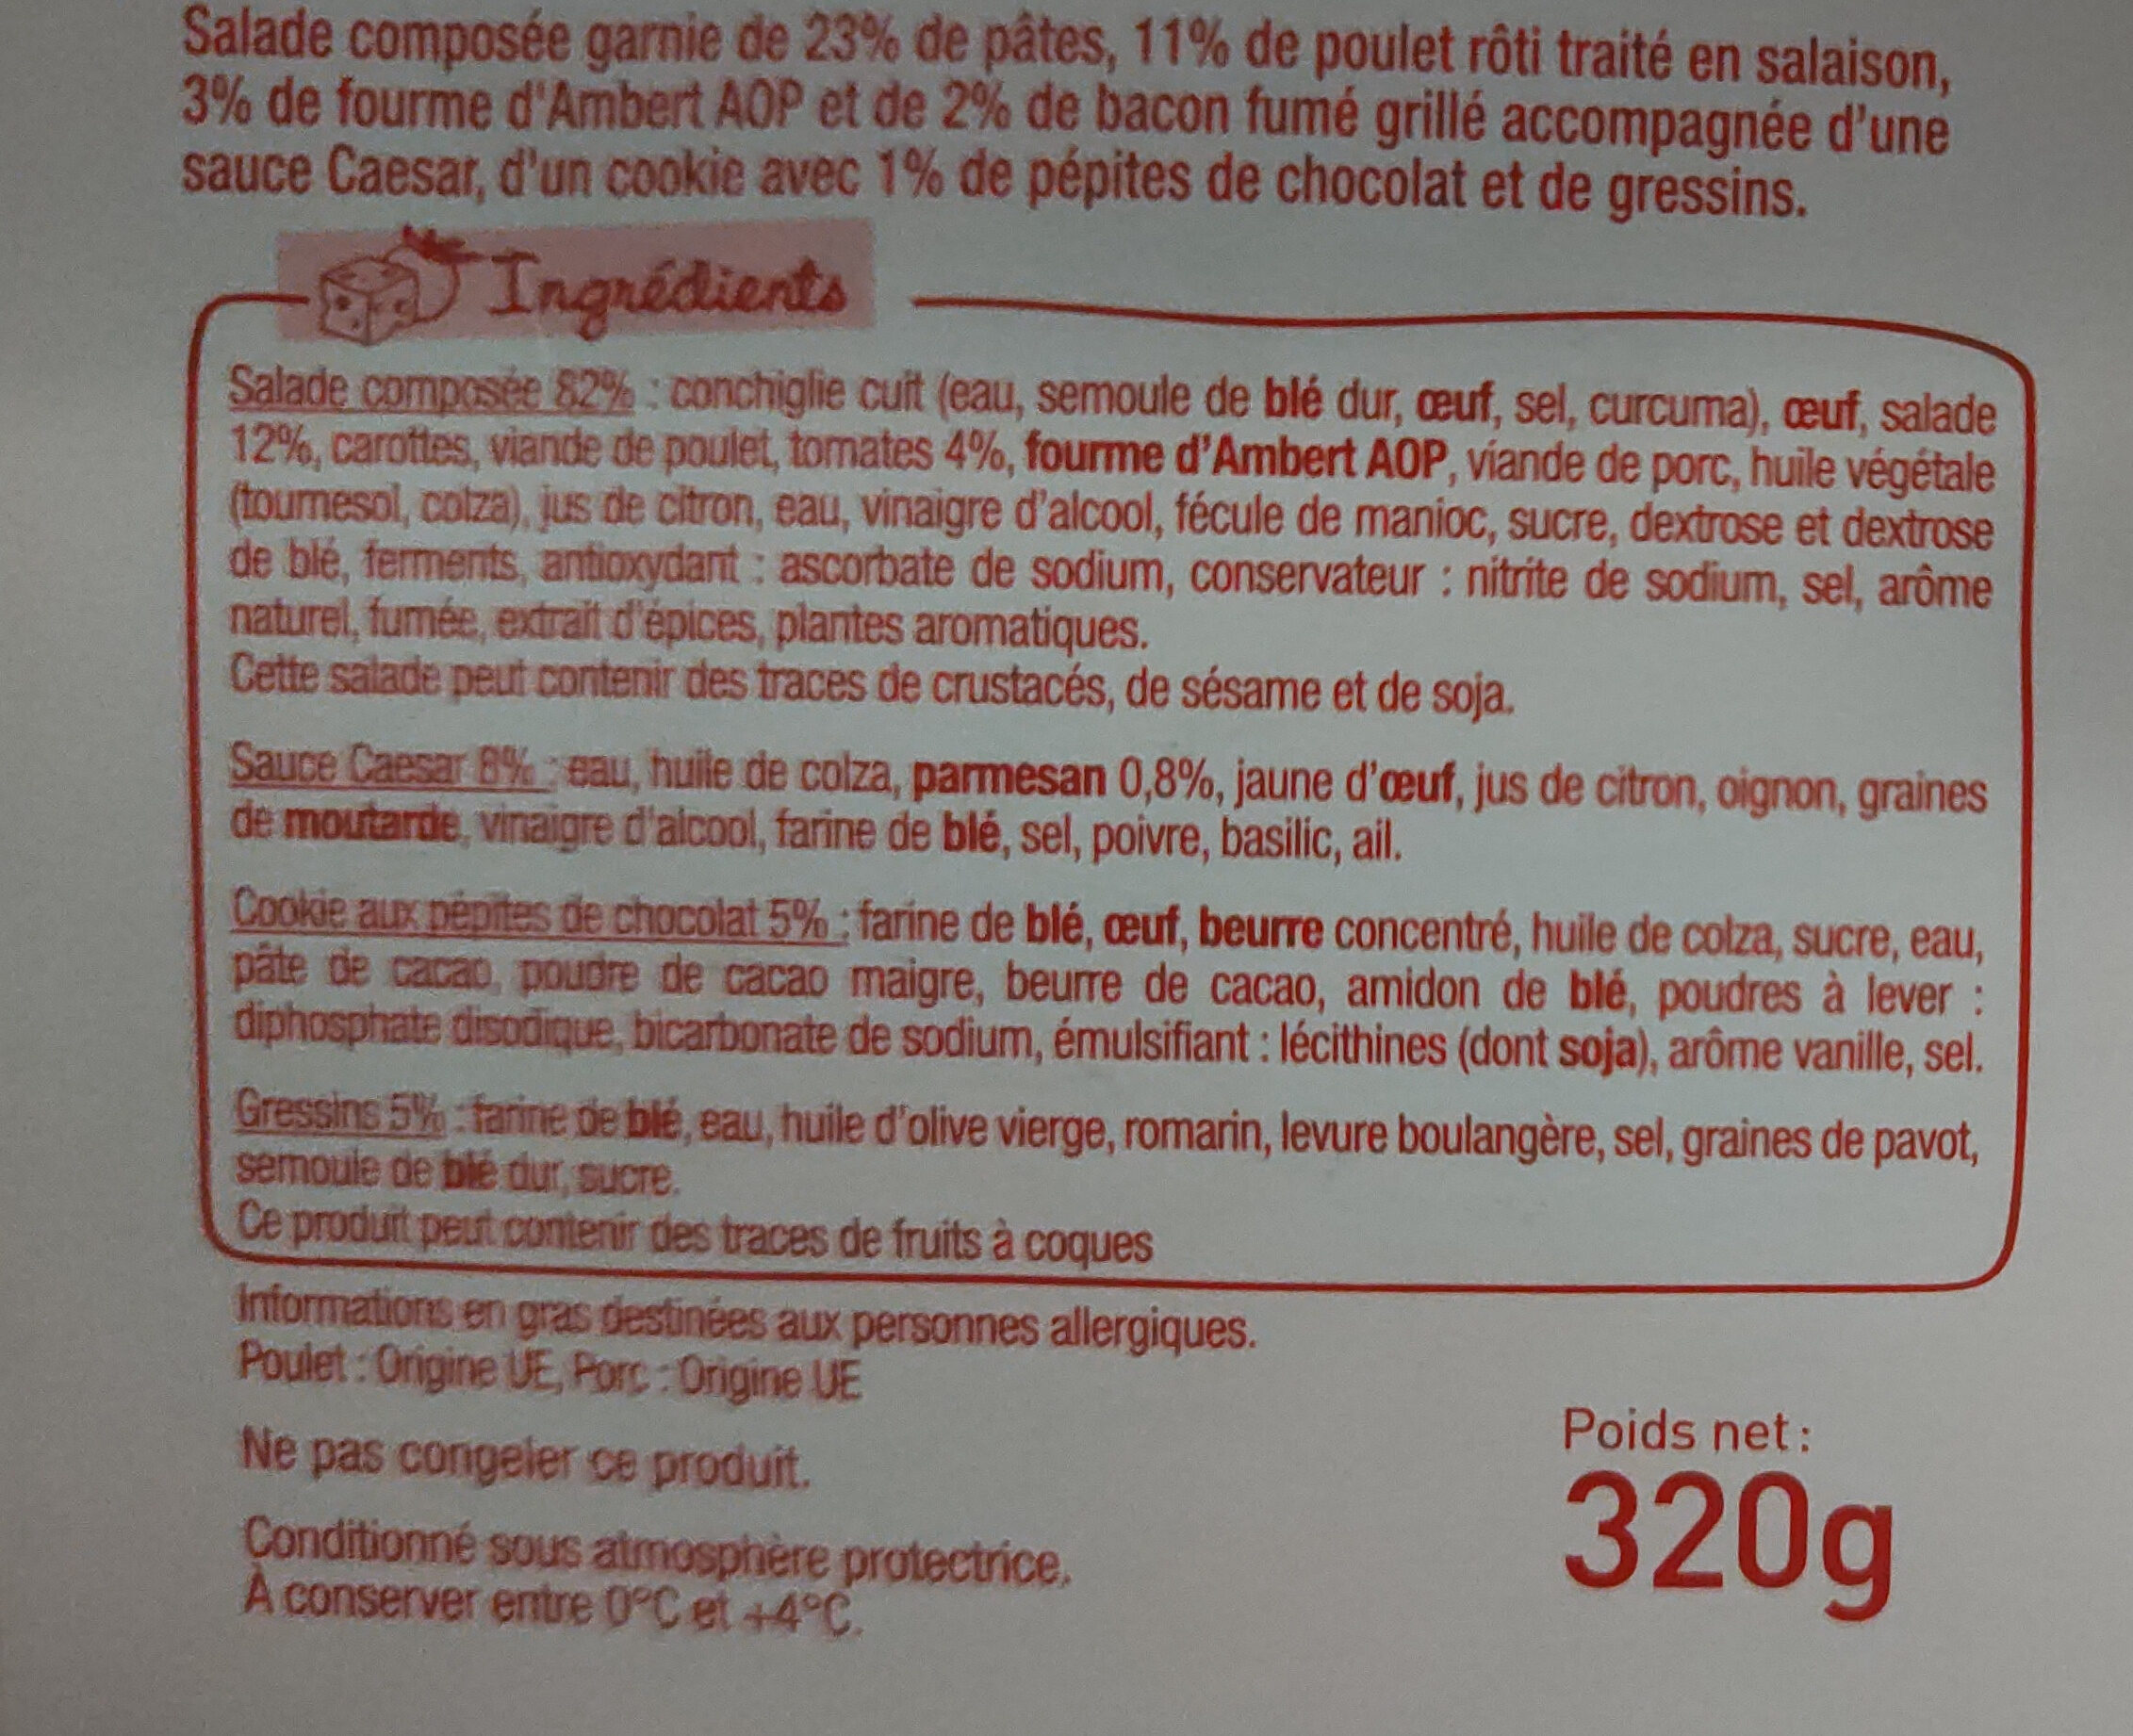 Salade poulet rôti bacon fromage - Instruction de recyclage et/ou informations d'emballage